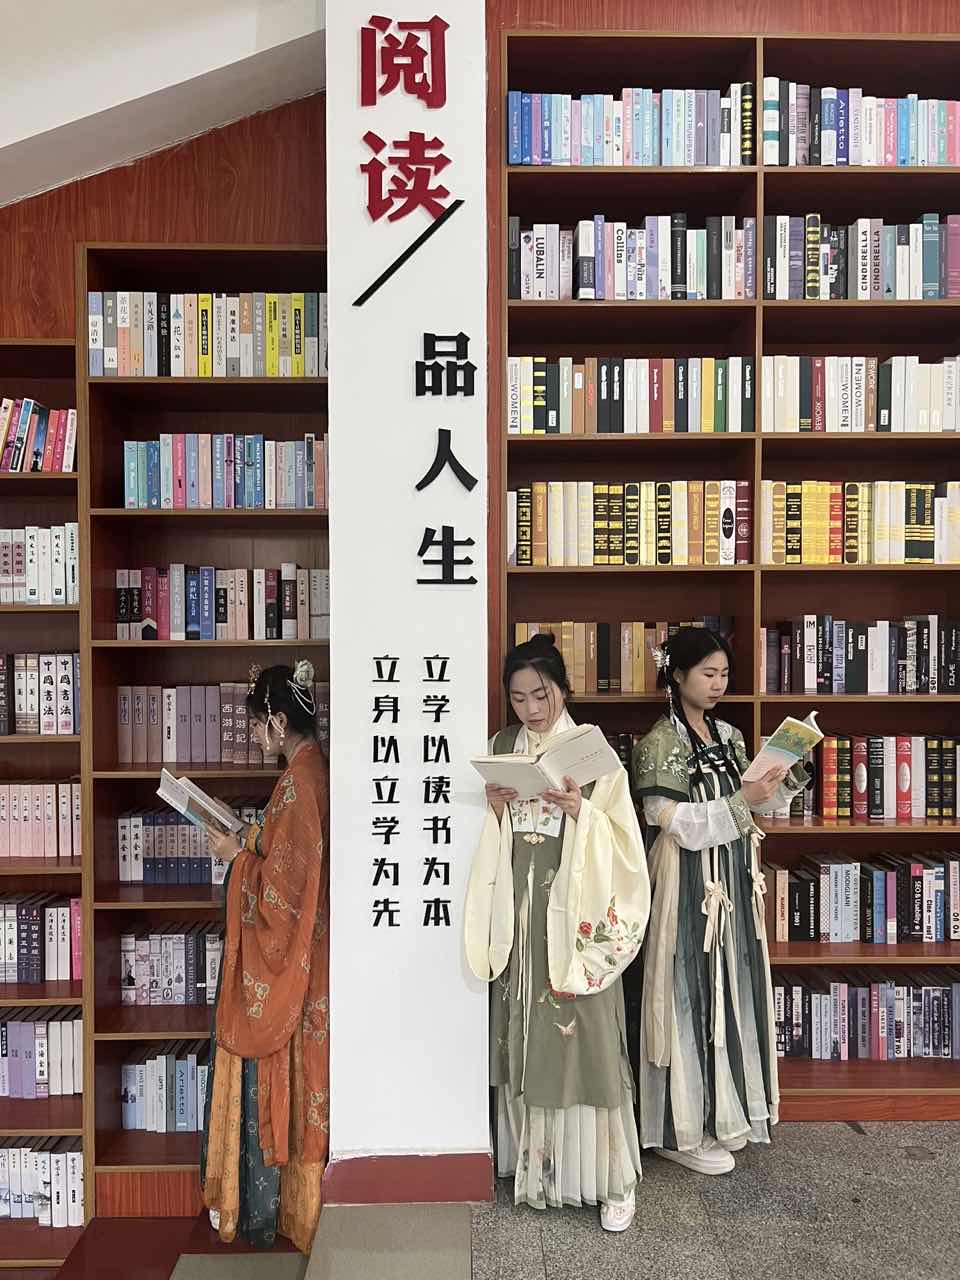 江西旅游商贸职业学院图书馆开展“你是人间的四月天—春日汉文化节”活动